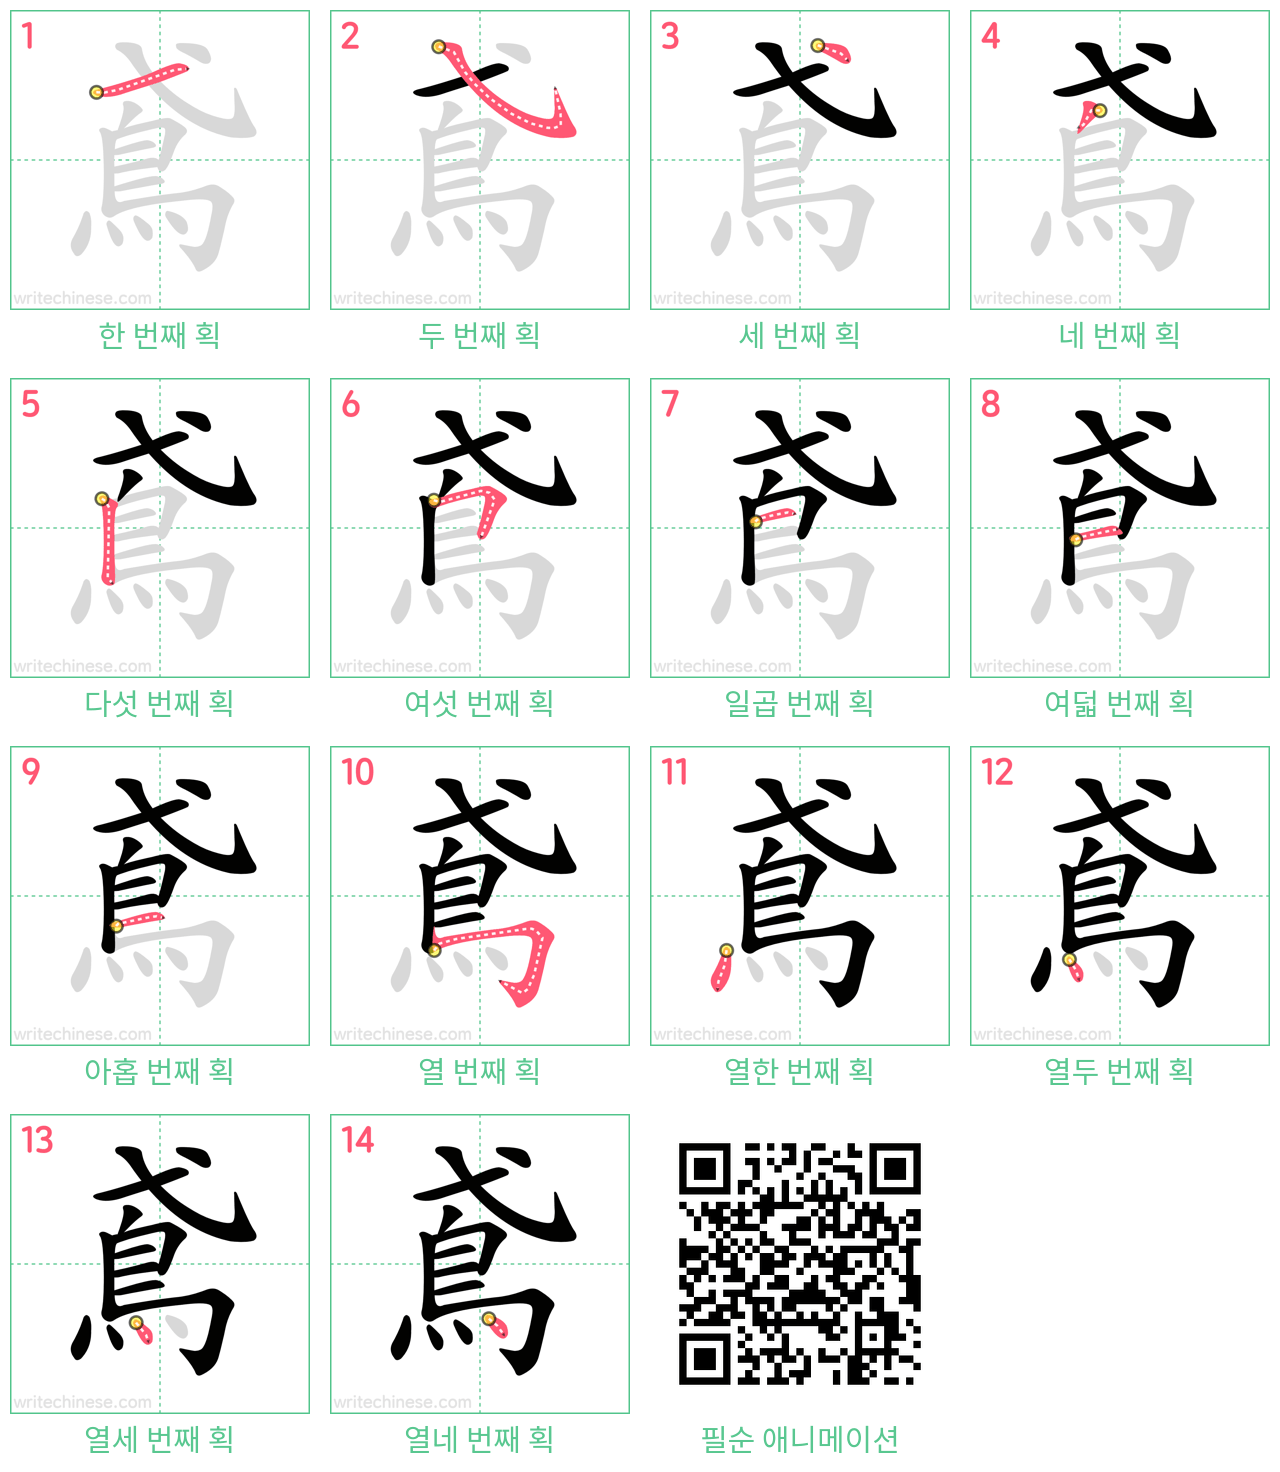 鳶 step-by-step stroke order diagrams